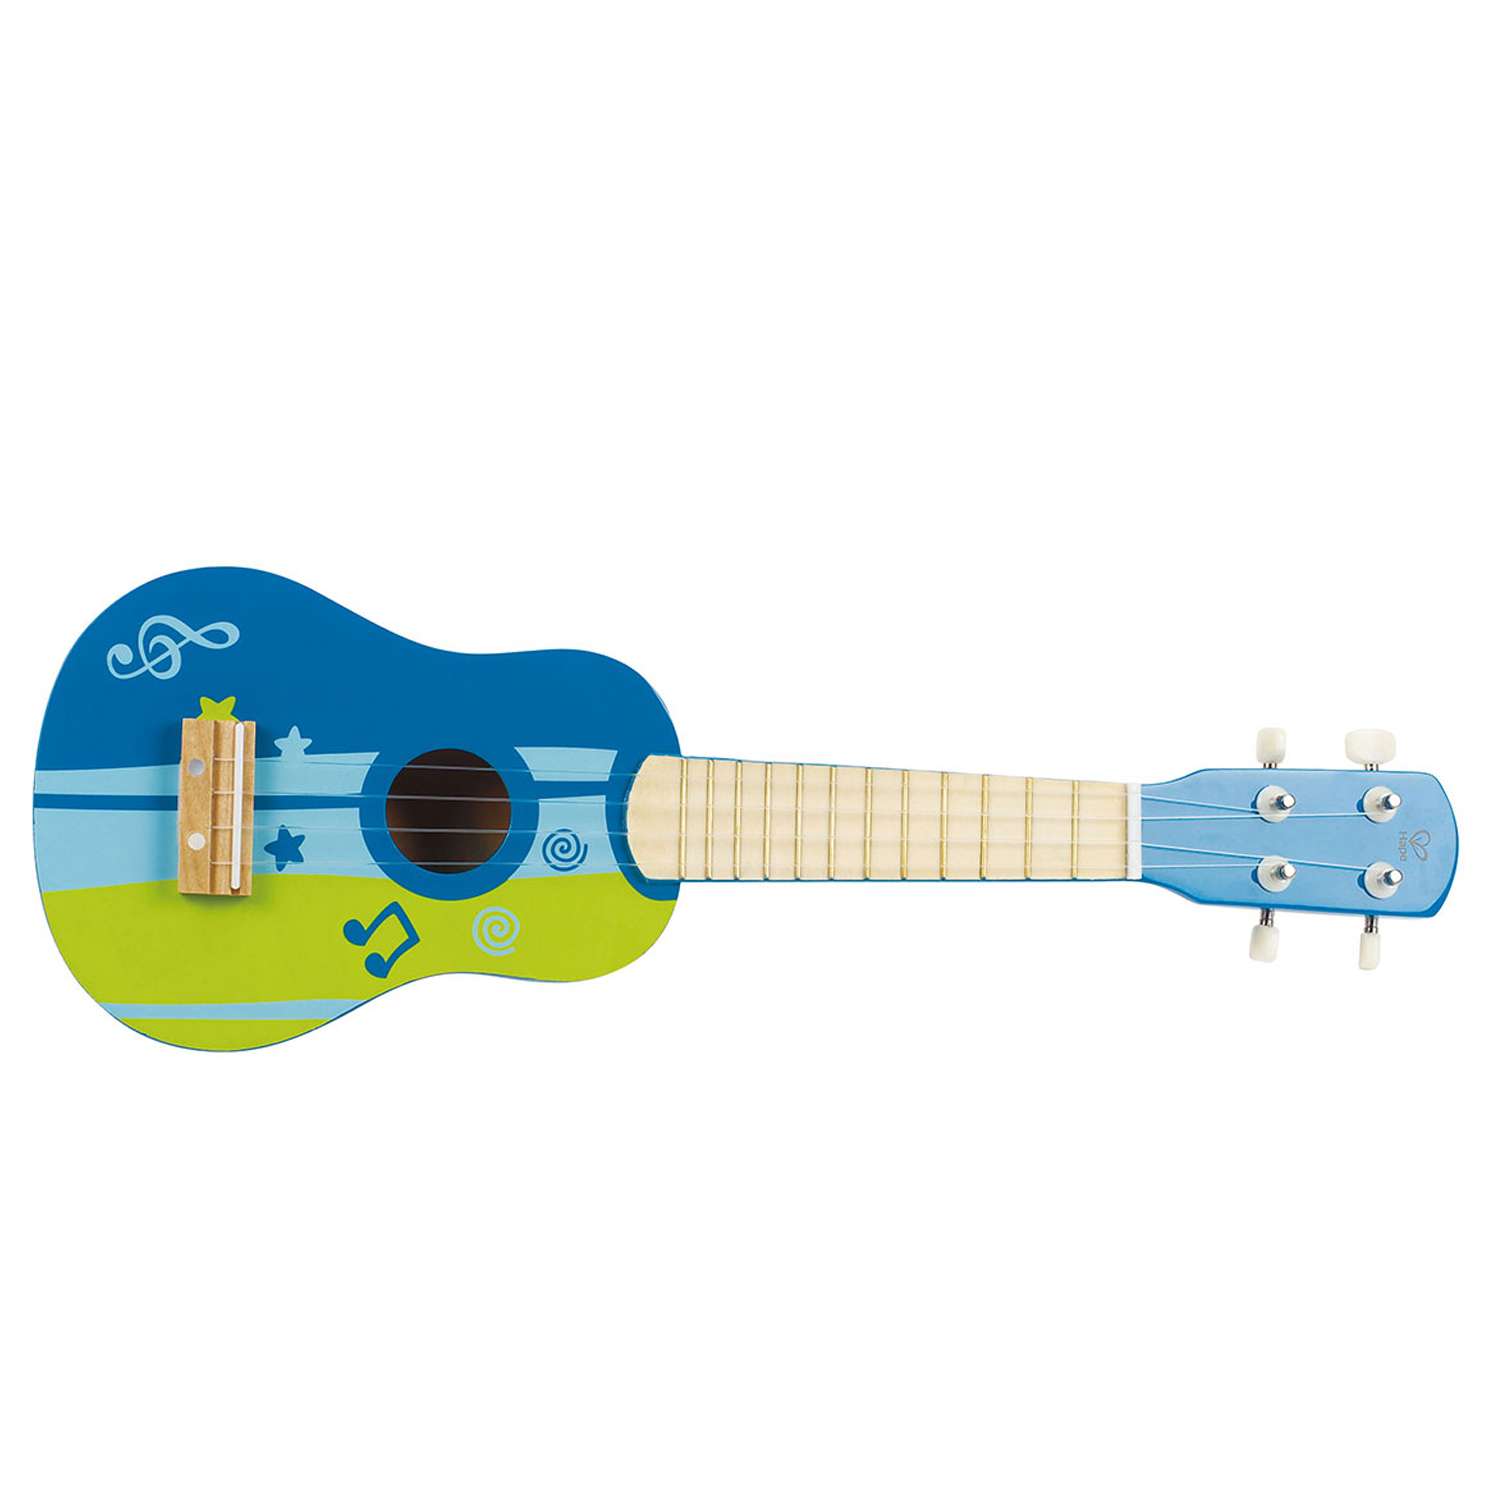 Гитара Hape деревянная синяя - фото 1